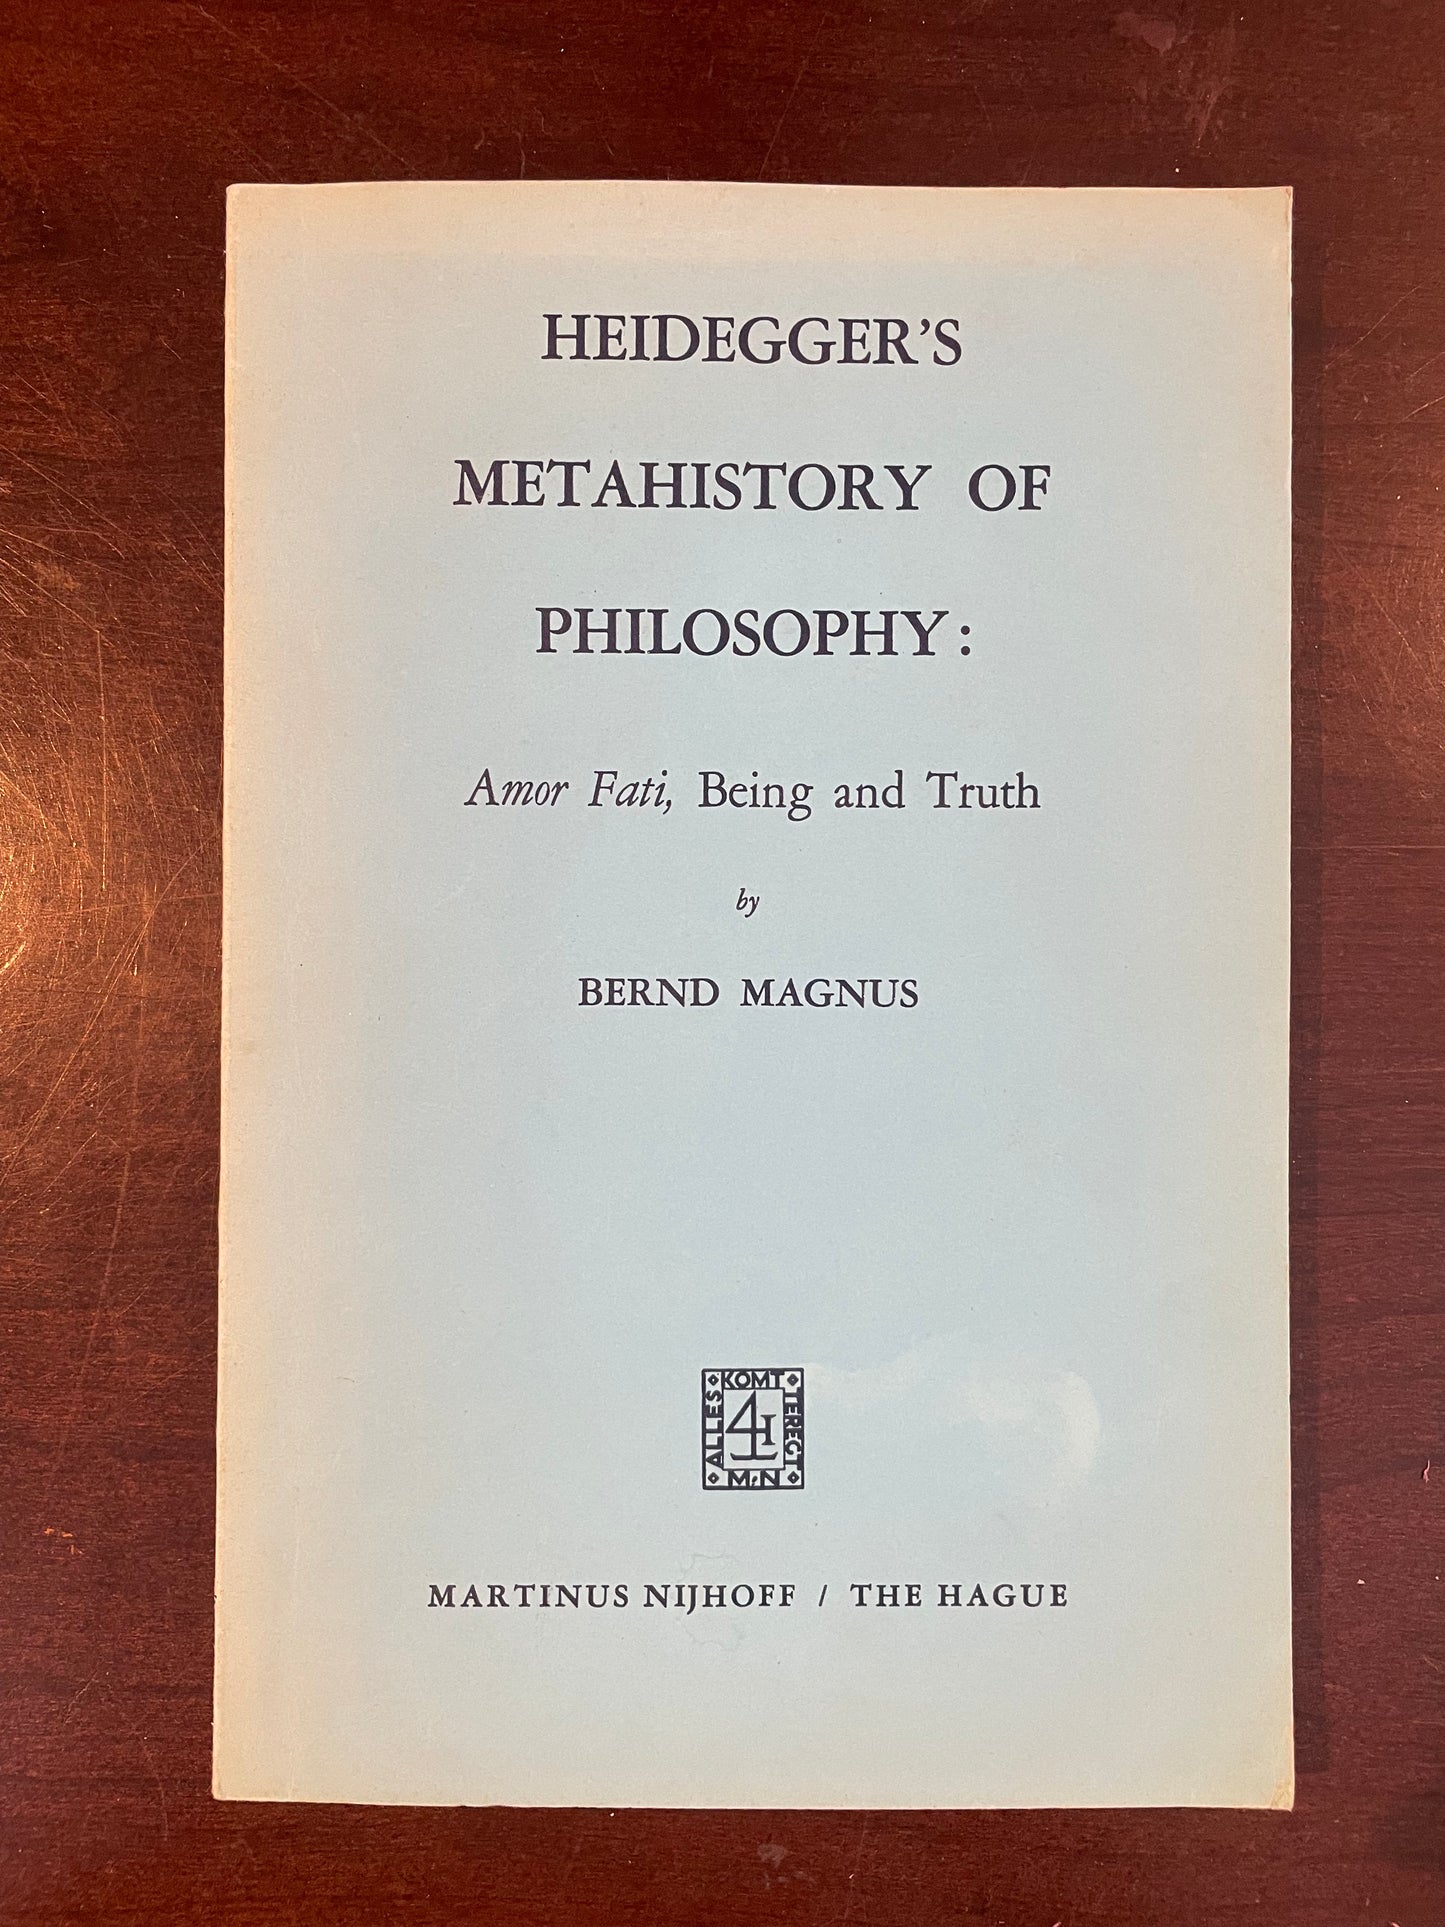 Heidegger’s Metahistory of Philosophy by Bernd Magnus